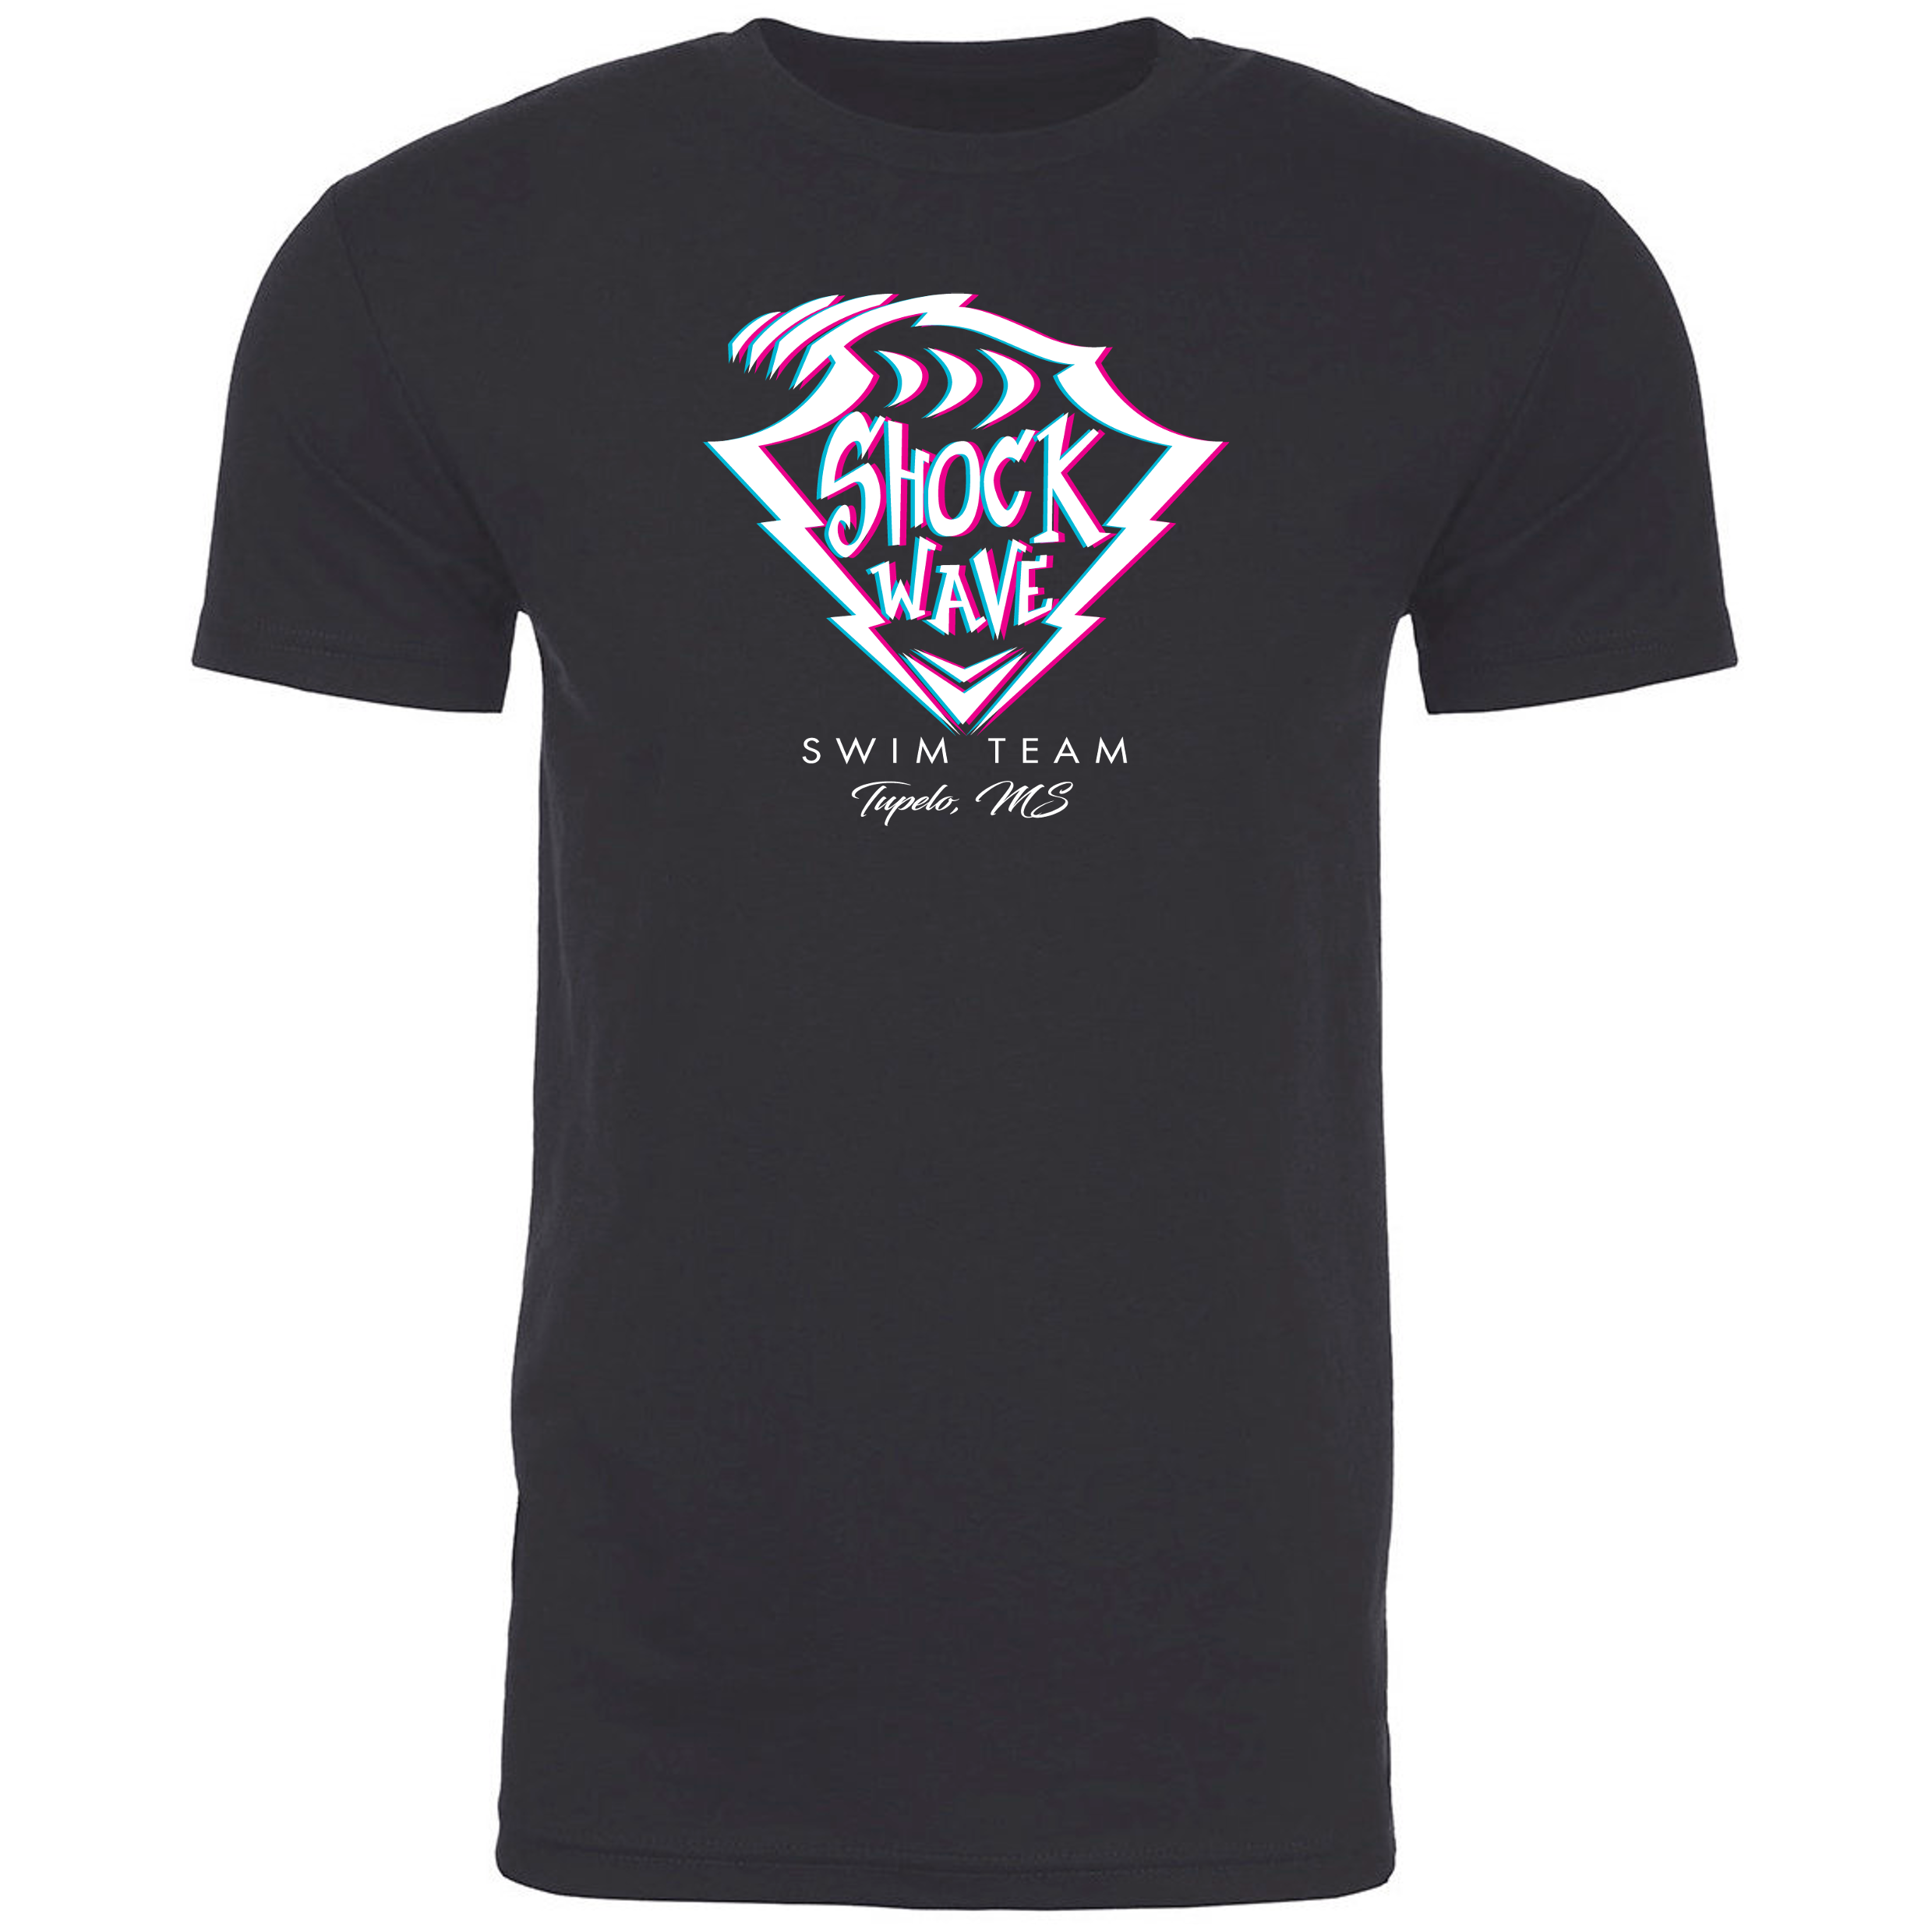 Team T-Shirt #1 - Shockwave